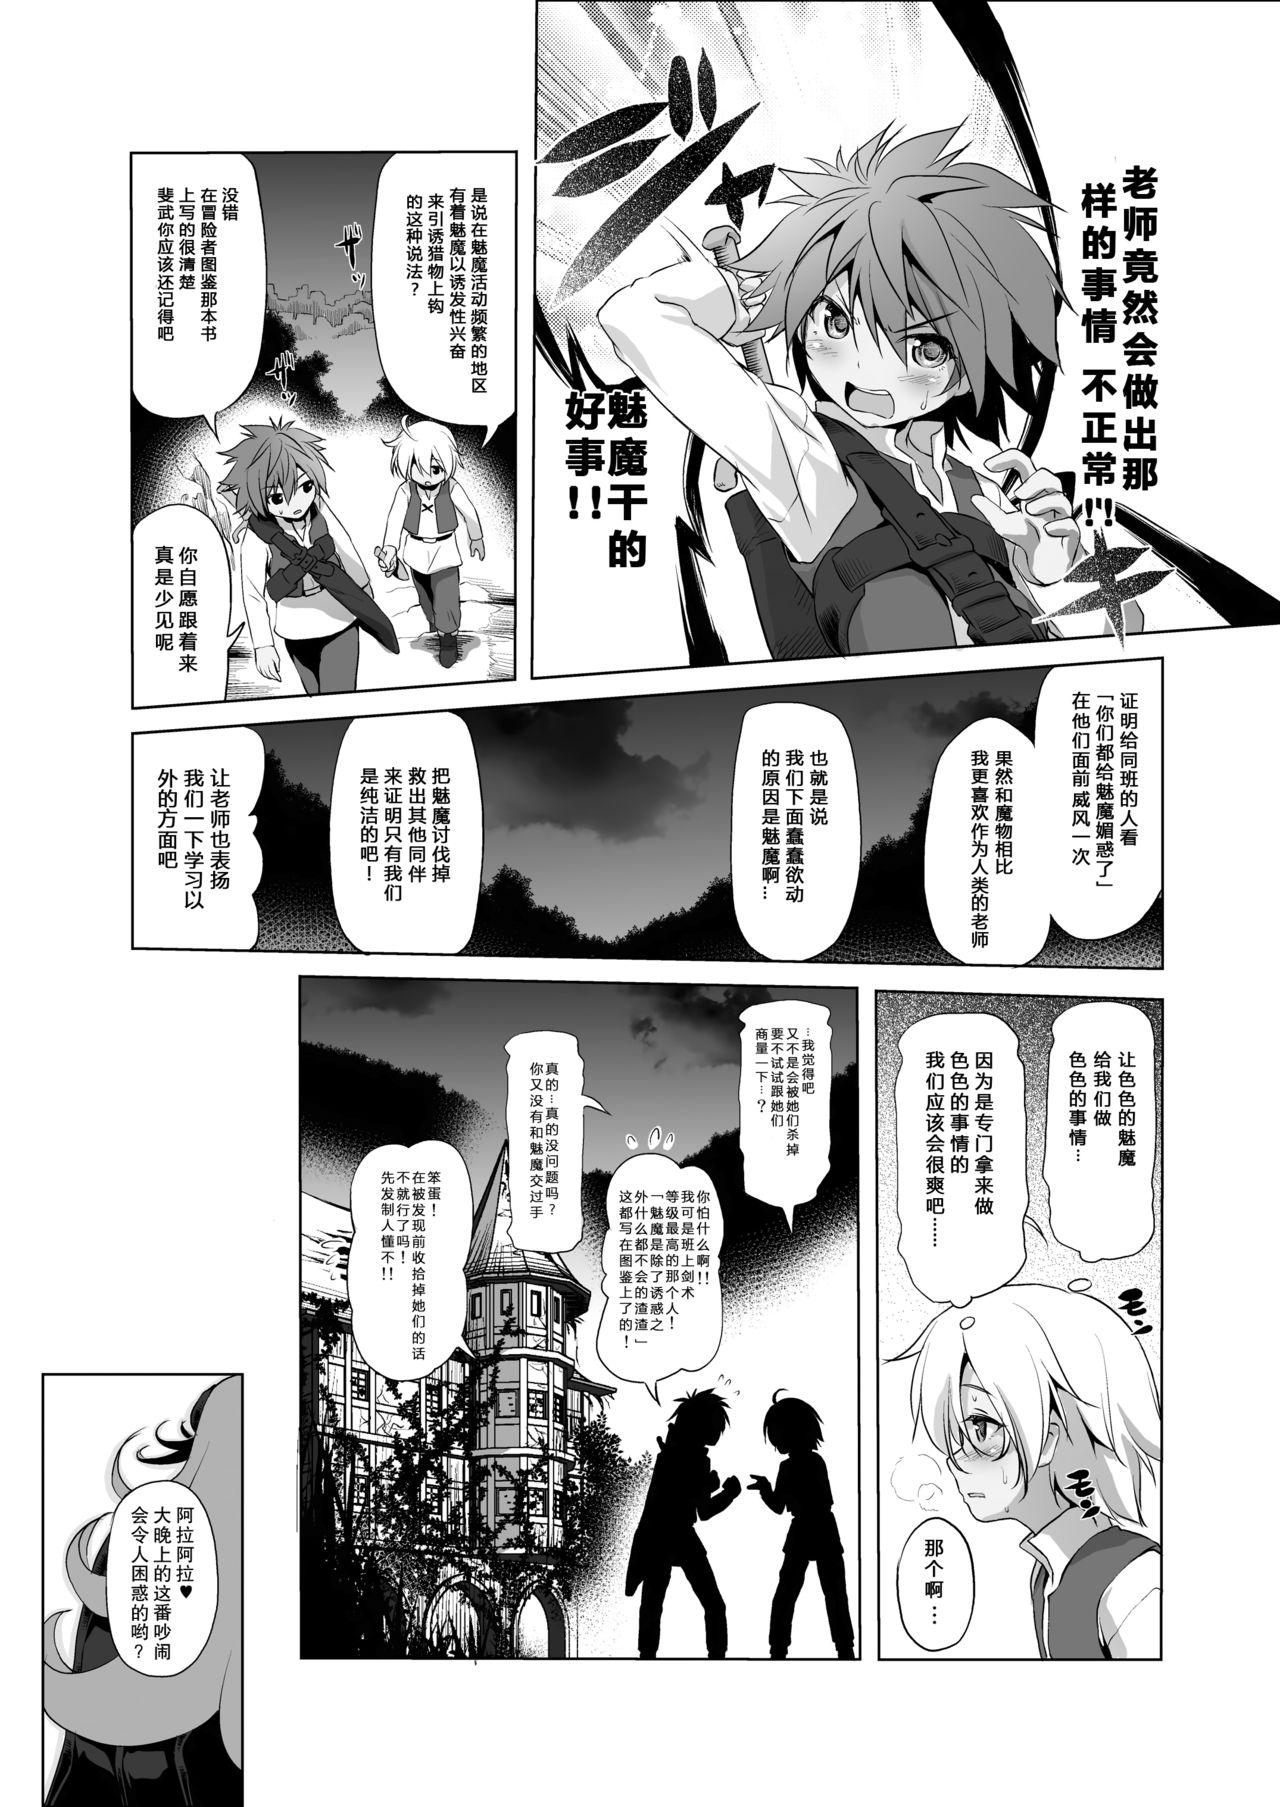 Black Cock Makotoni Zannen desu ga Bouken no Sho 3 wa Kiete Shimaimashita. - Original Gay Shorthair - Page 11